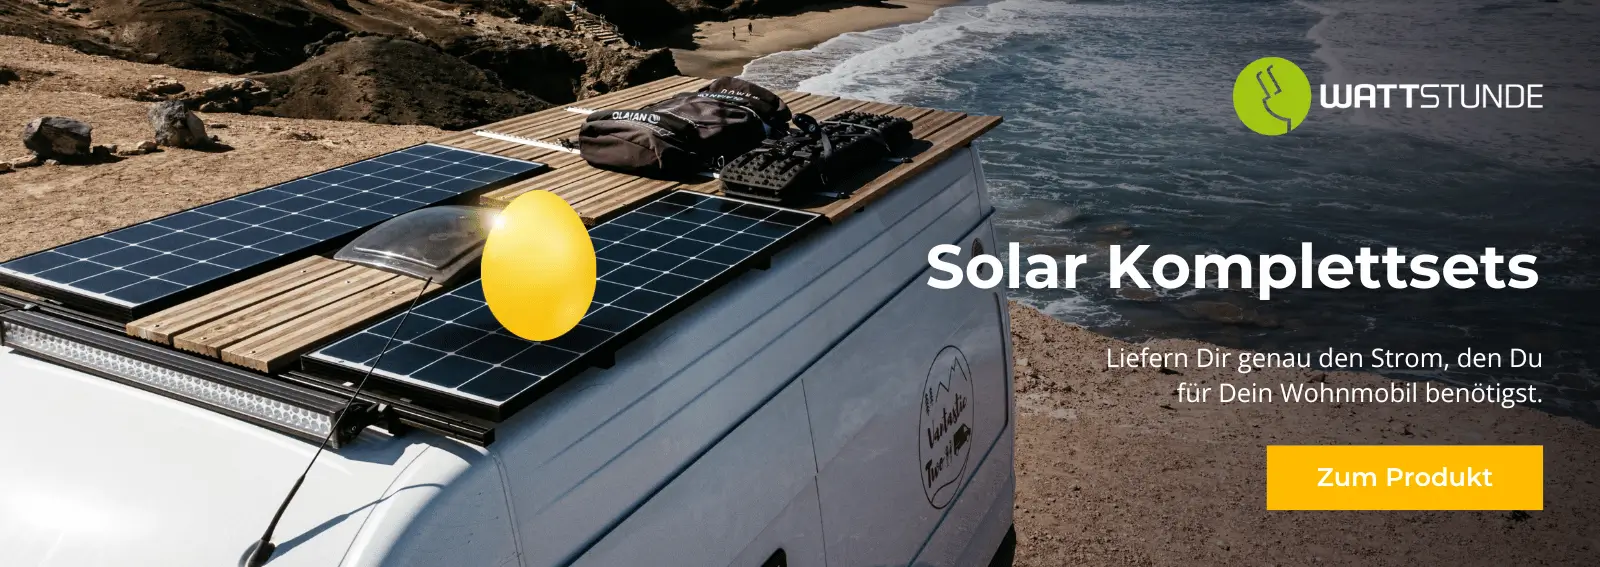 SolarShop-Banner-Desktop-KomplettsetsEi.webp